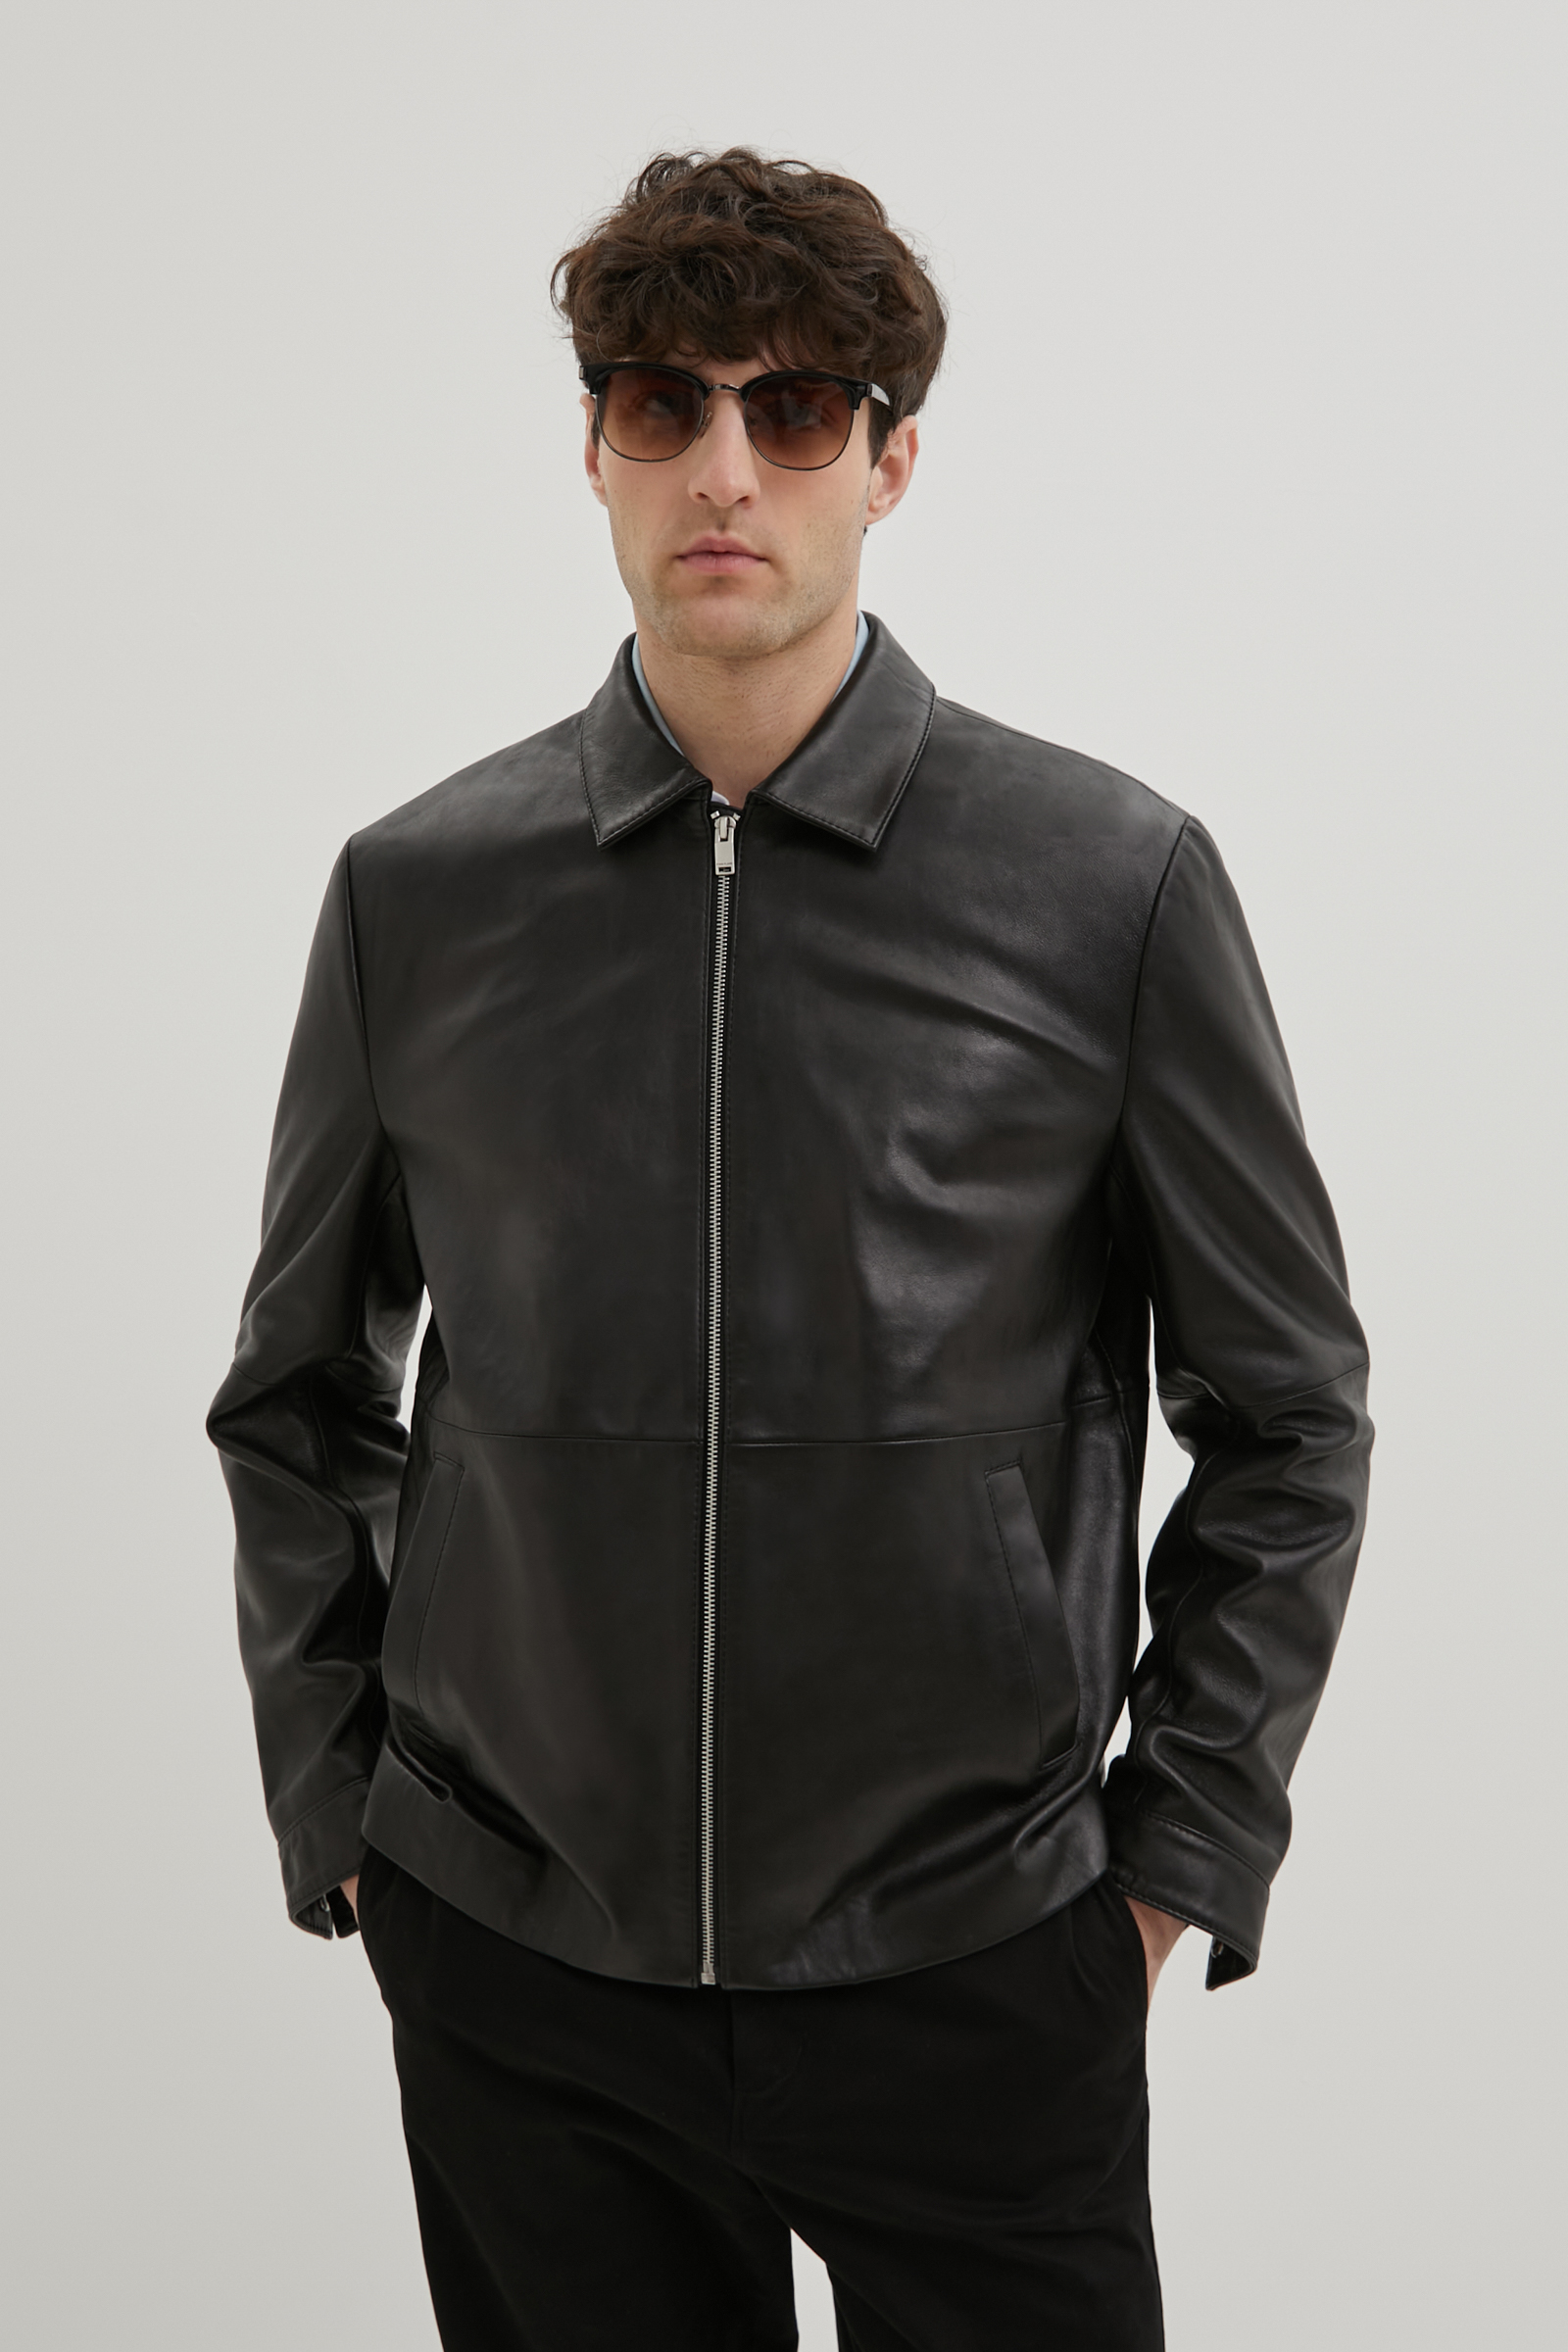 Кожаная куртка мужская Finn Flare FBE21800 черная XL